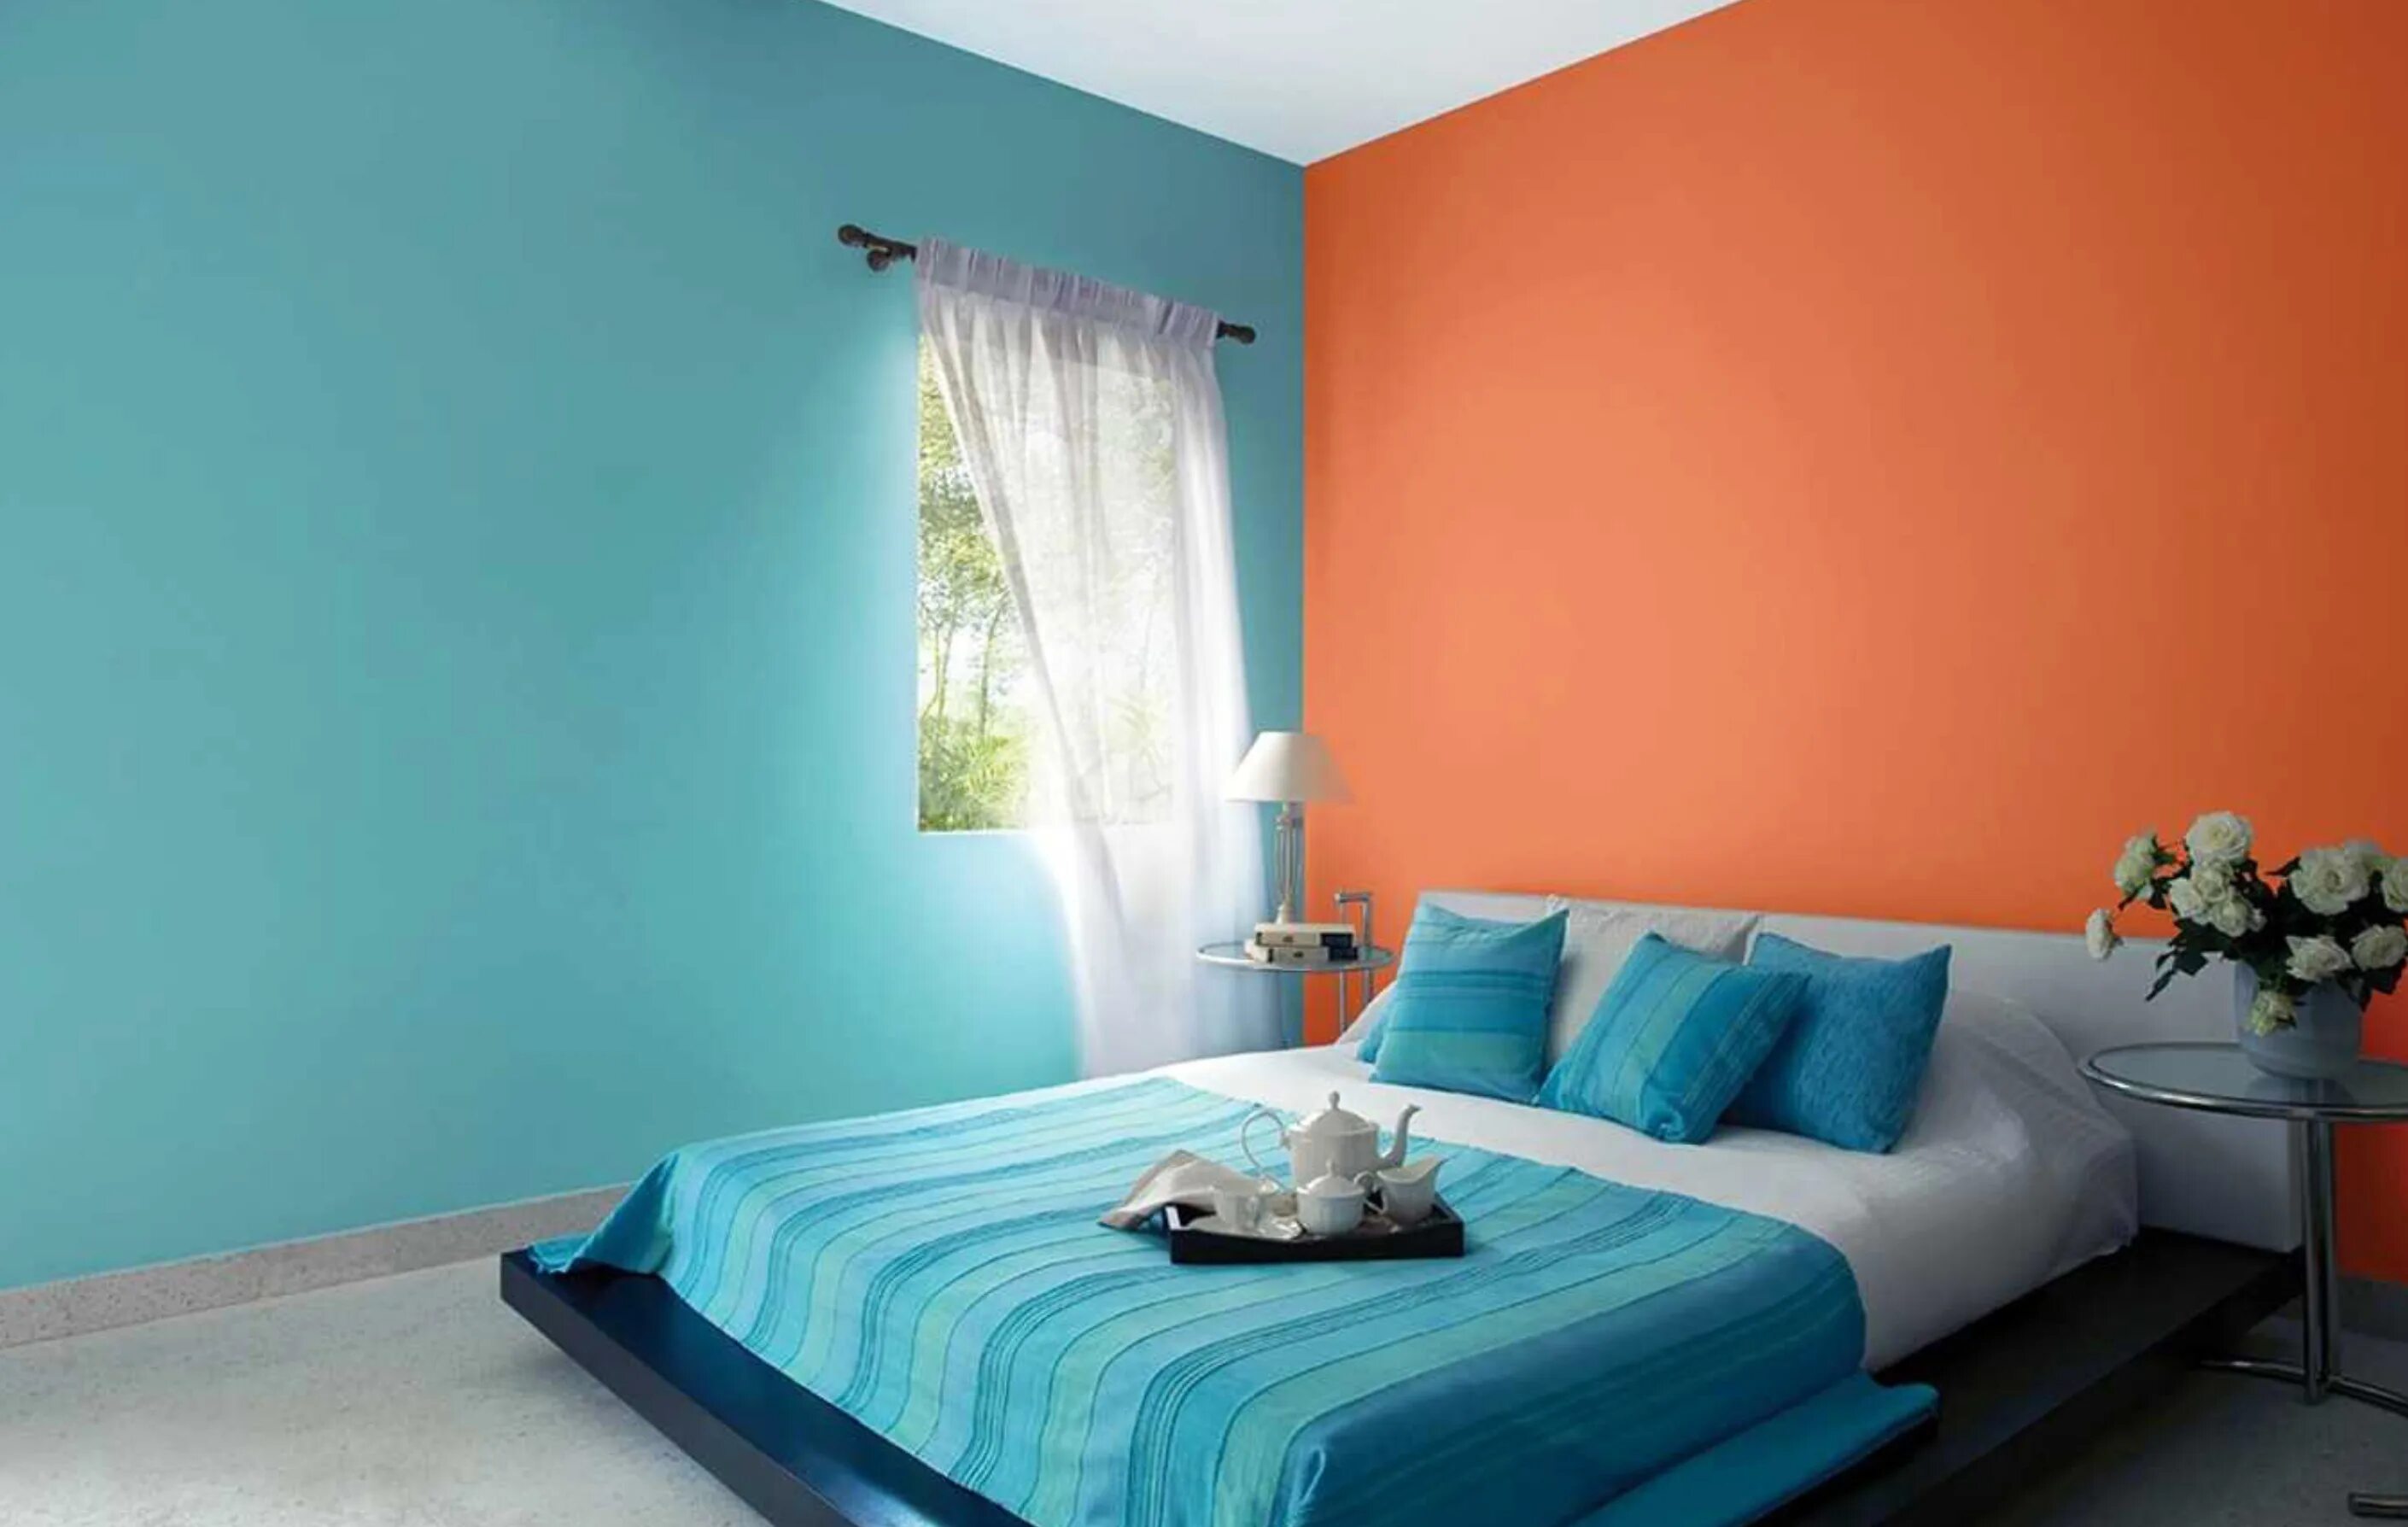 Крашеные стены. Сочетание голубого и оранжевого в интерьере. Колеровка стен в интерьере. Крашеные стены в интерьере. Бирюзовая краска для стен.